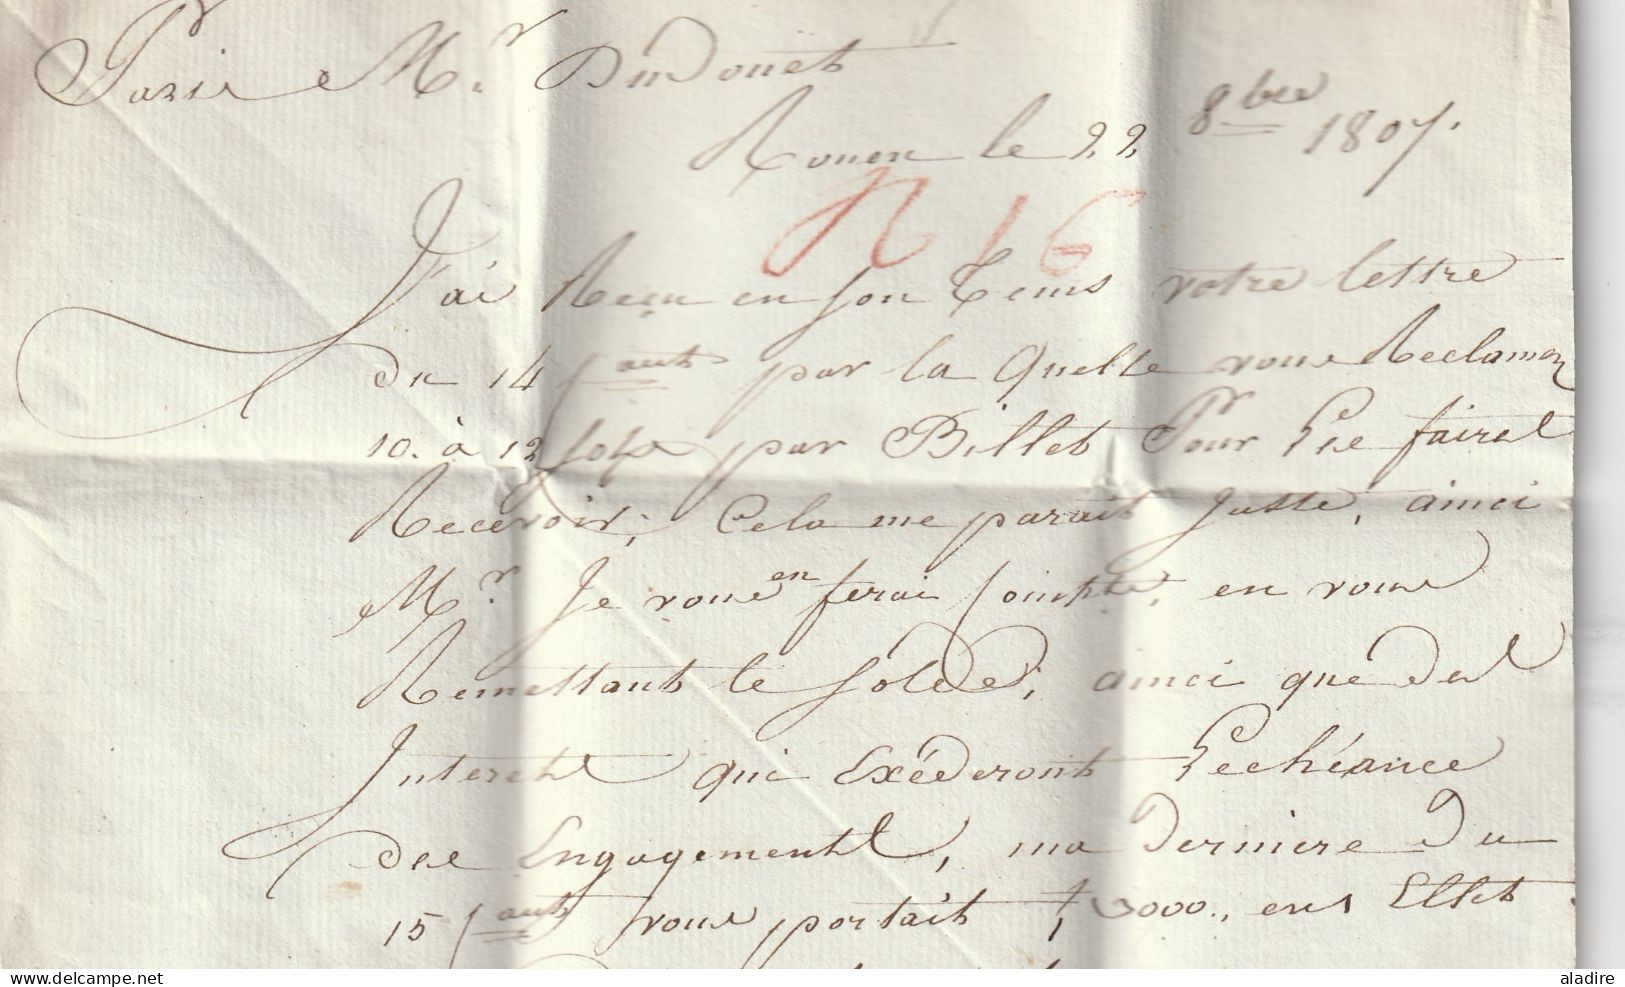 1807 - Marque postale 74 ROUEN sur Lettre pliée avec correspondance vers PARIS